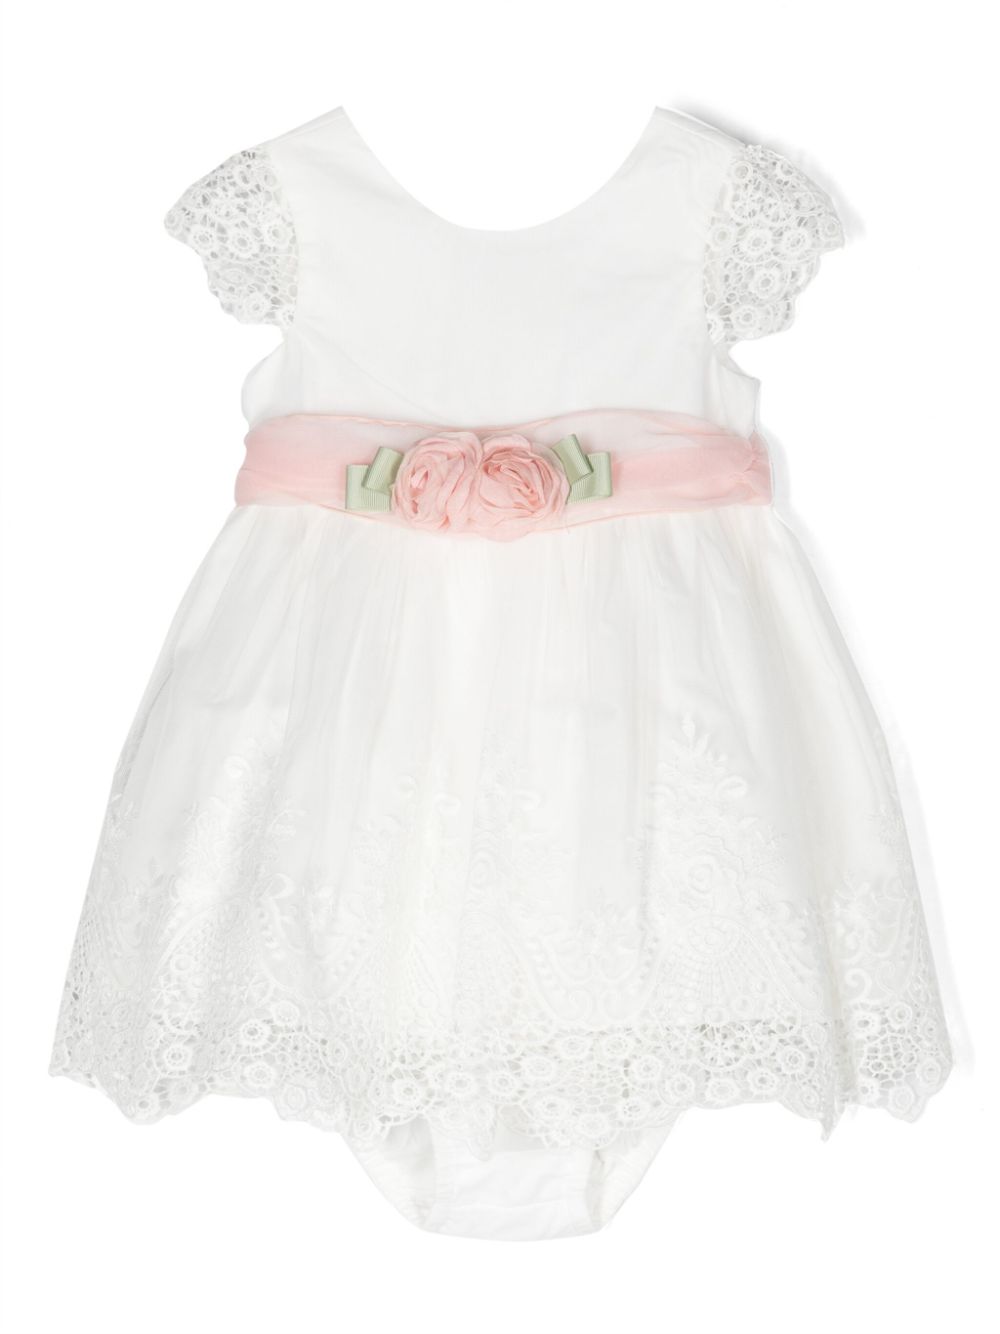 White tulle dress for baby girls